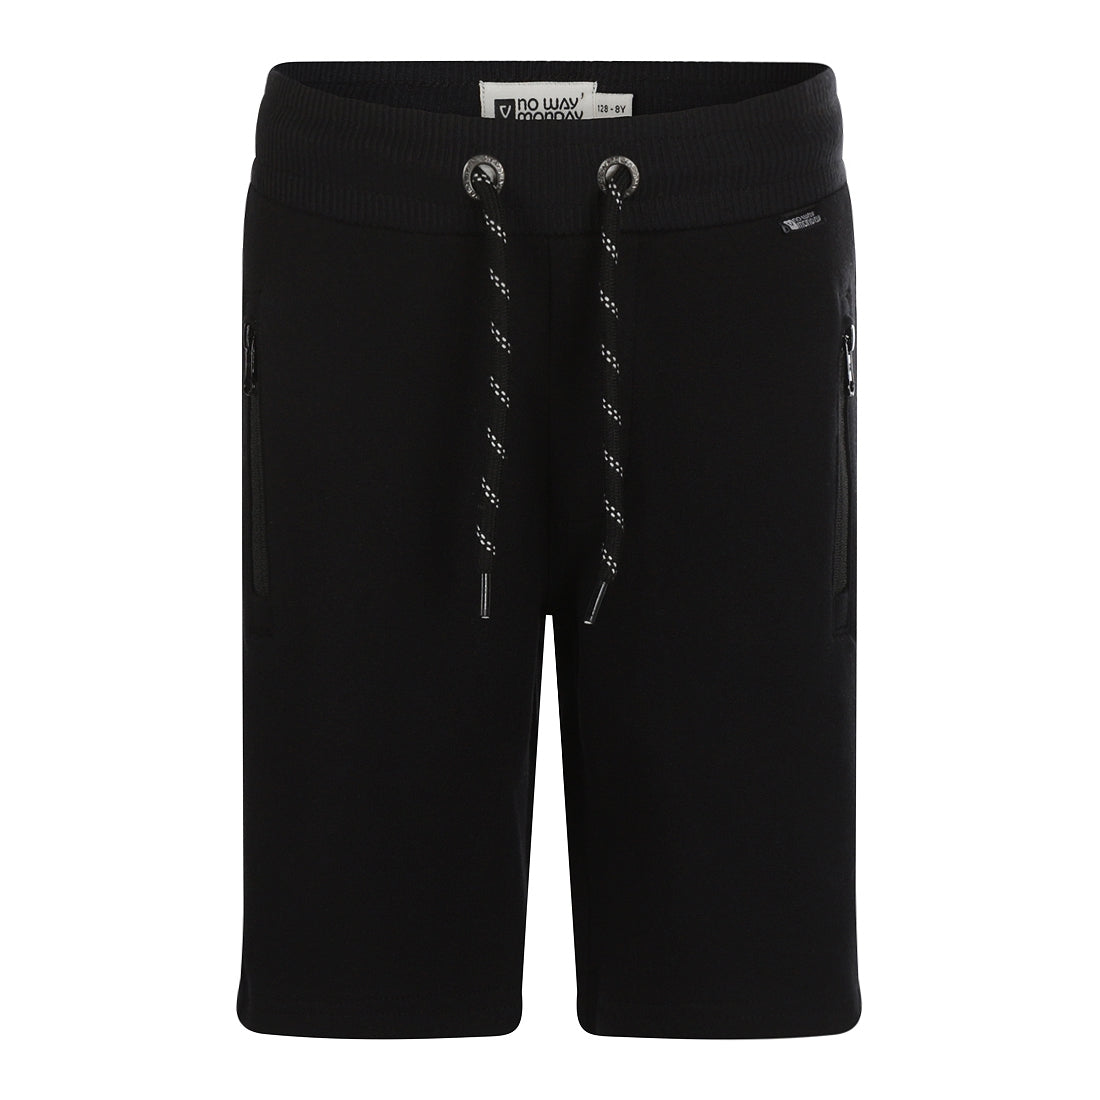 Jongens Jogging shorts van No Way Monday in de kleur Black in maat 164.